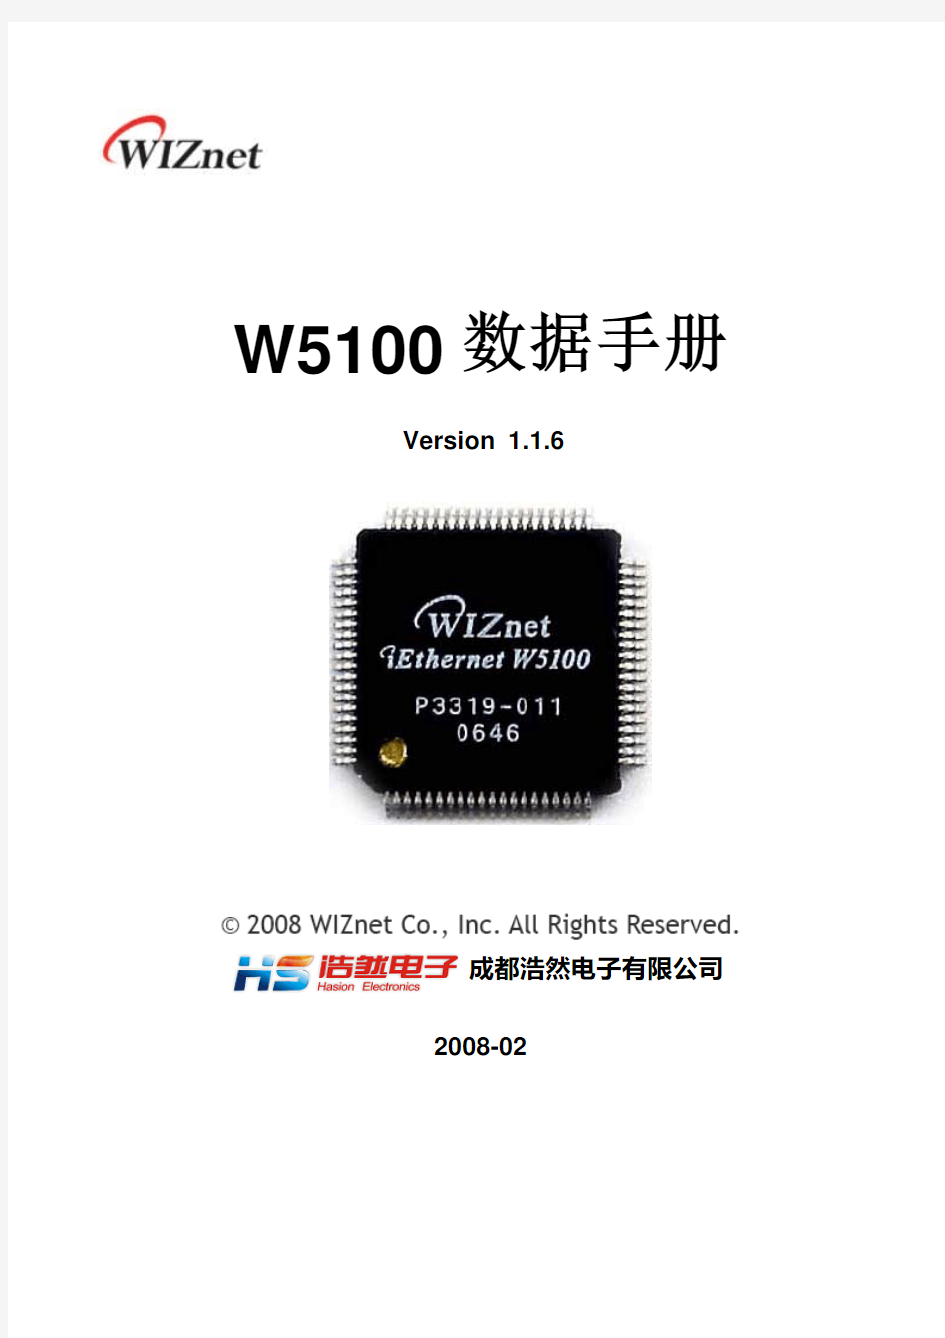 W5100-v1.1.6Cn